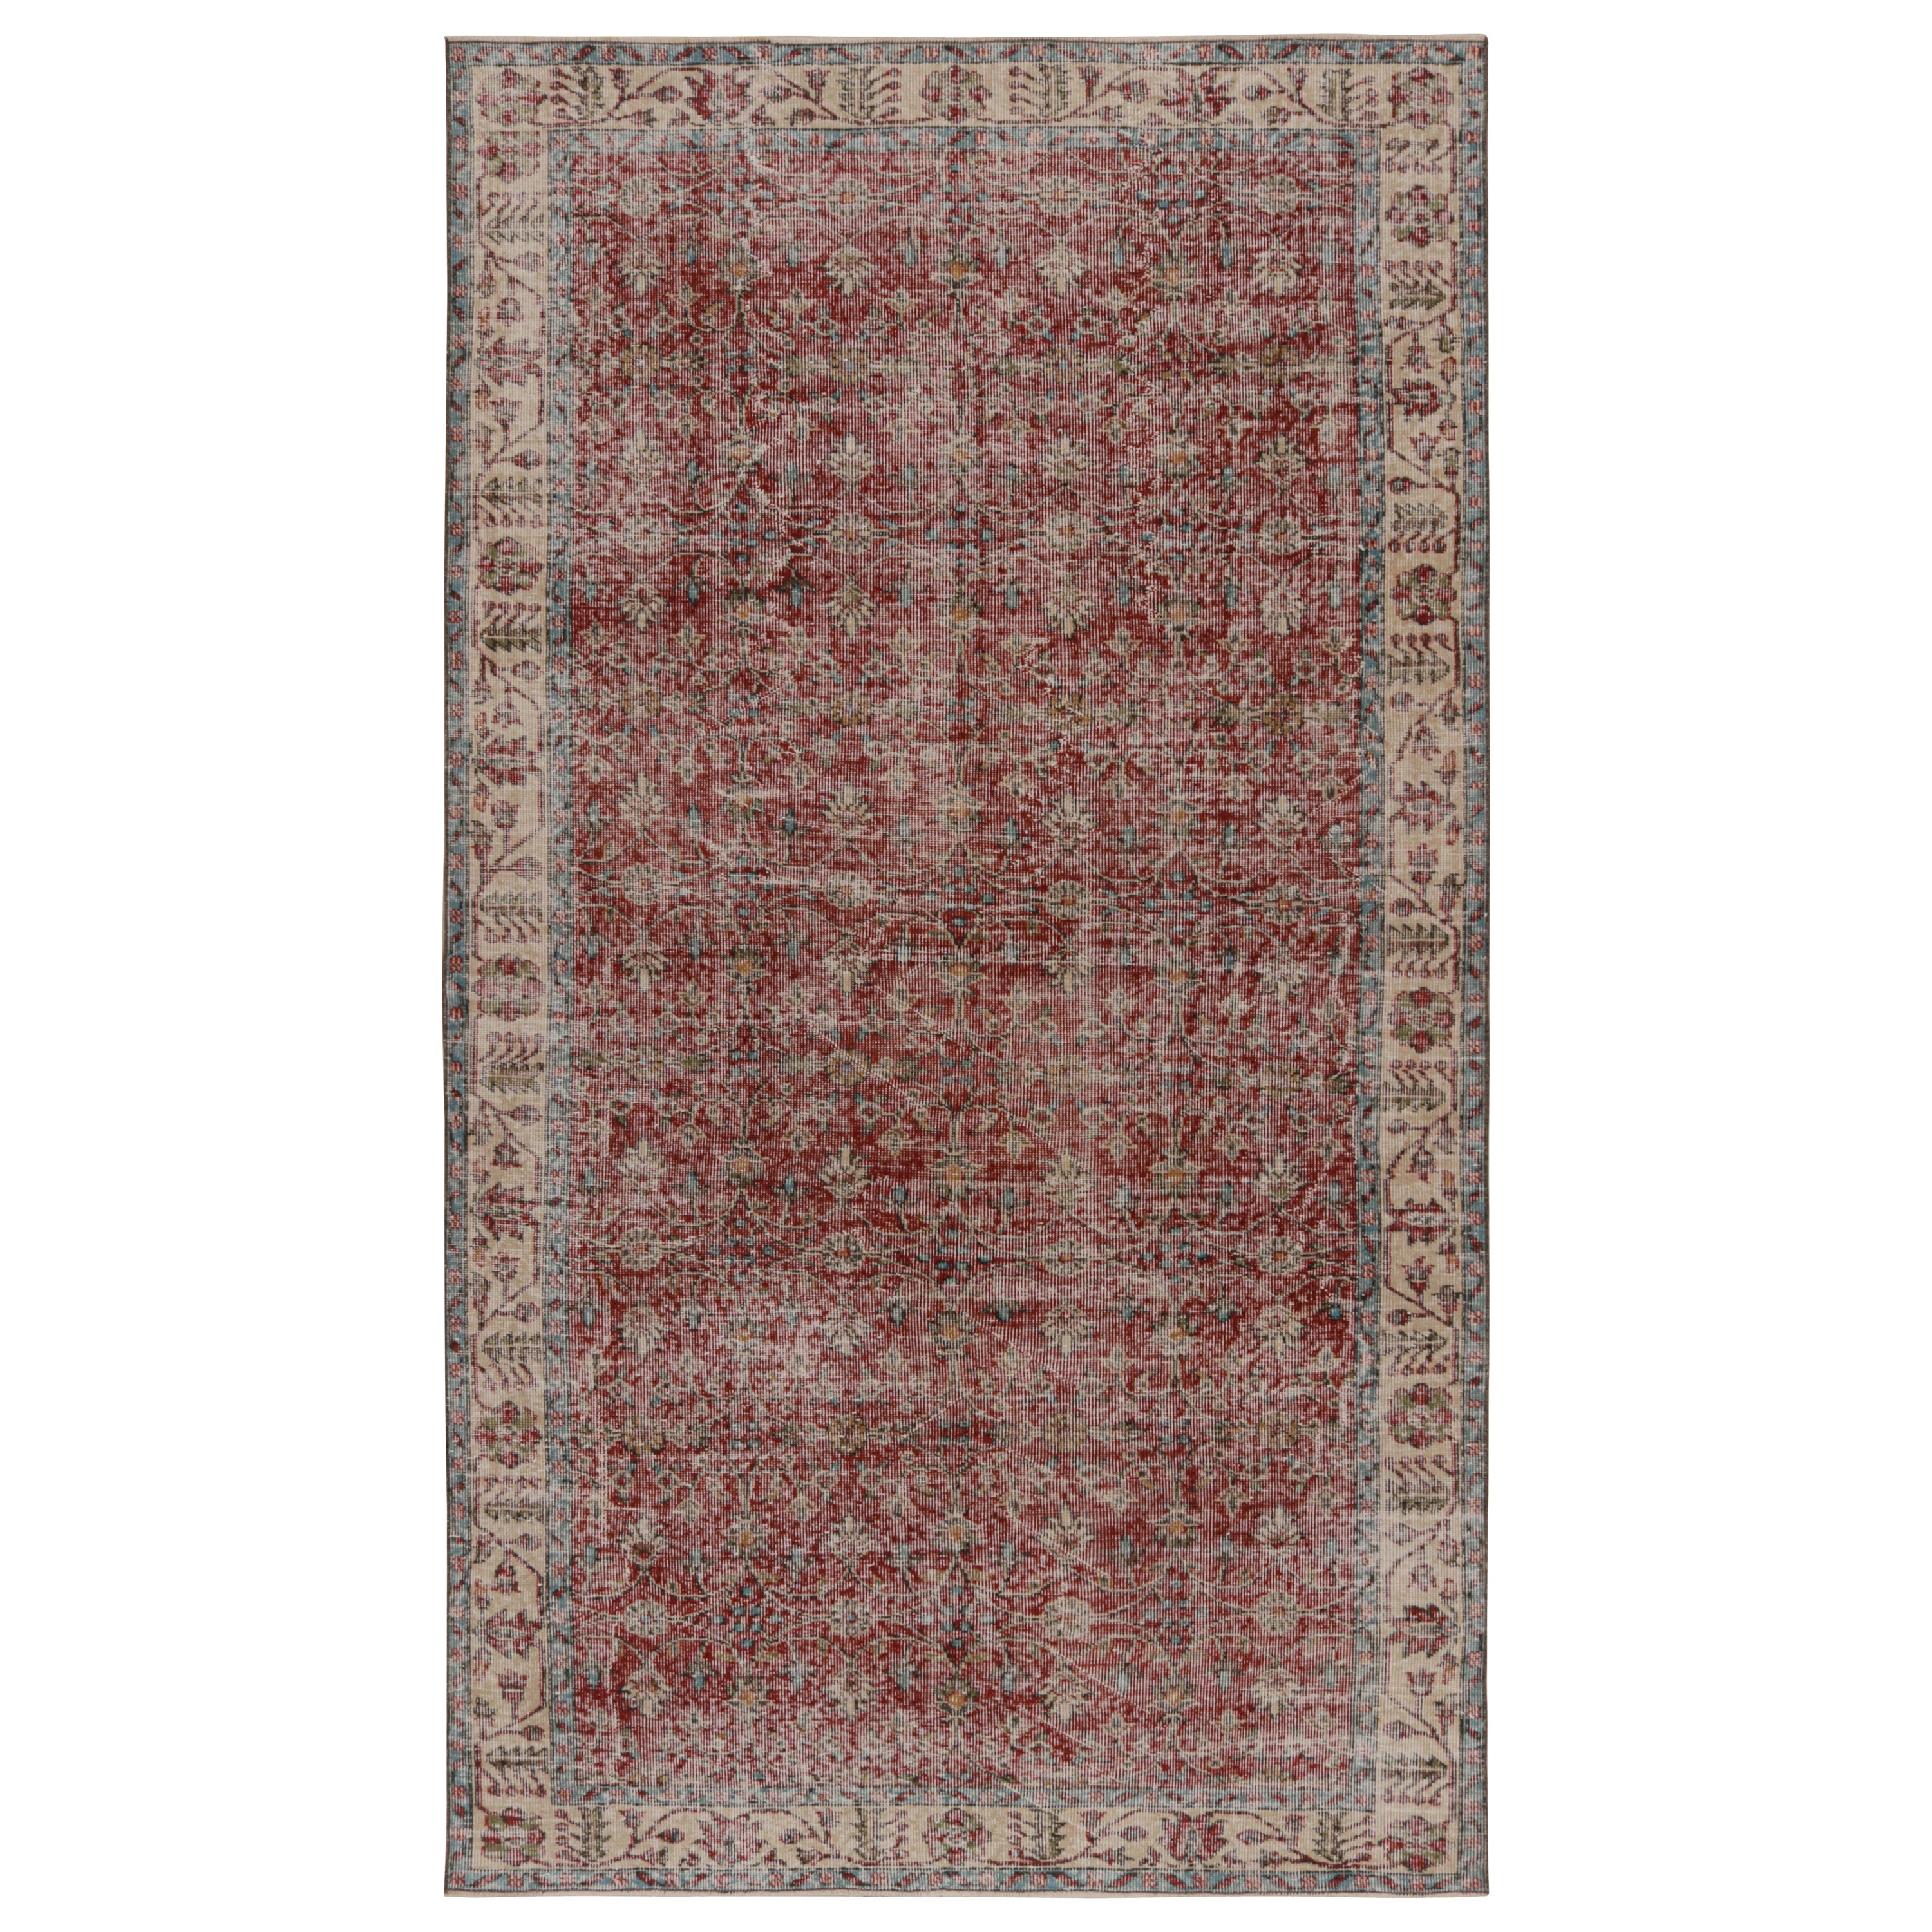 Türkischer Vintage-Teppich in Rot mit floralen Mustern, von Rug & Kilim